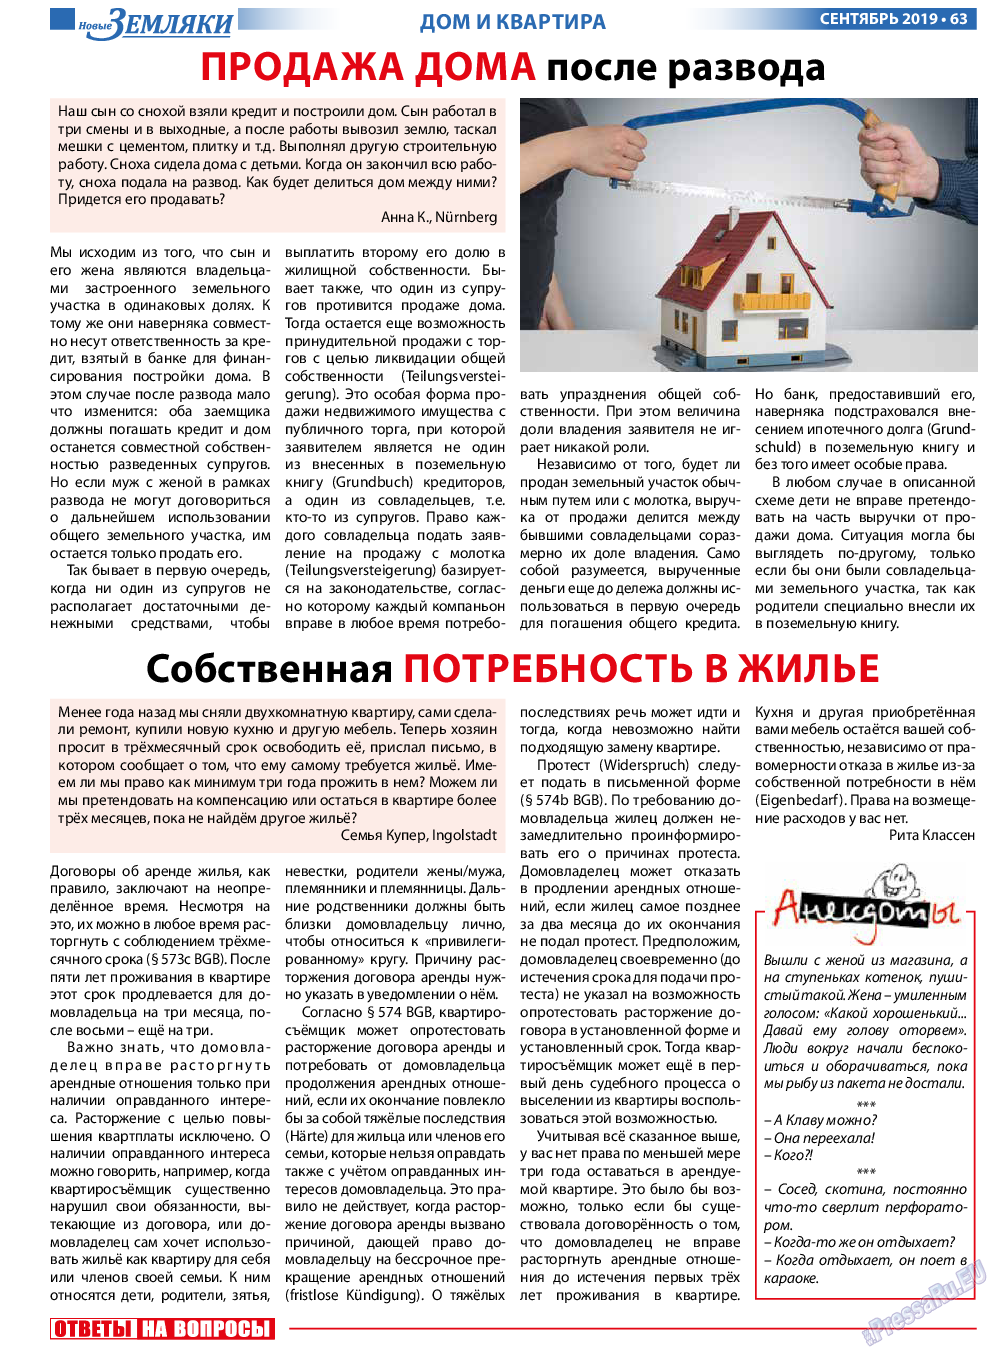 Новые Земляки, газета. 2019 №9 стр.63